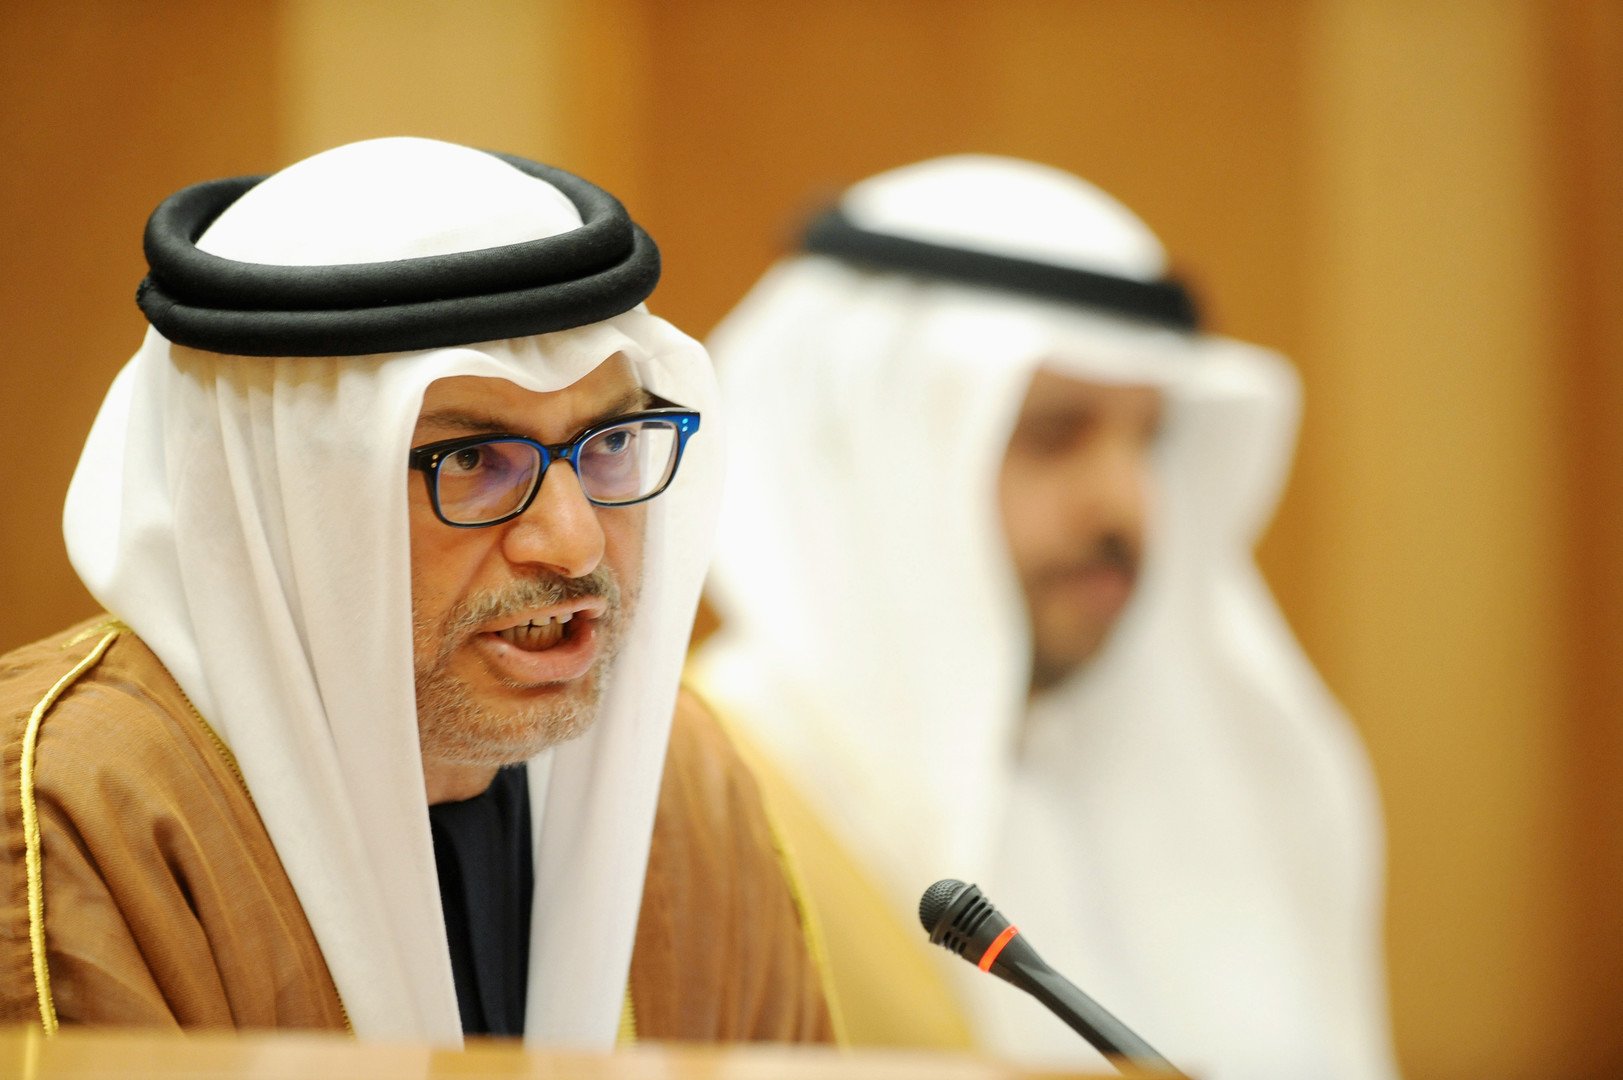 قرقاش: اللجوء إلى الإرهاب ضد الإمارات يؤكد صواب إجراءاتنا ضد الدوحة